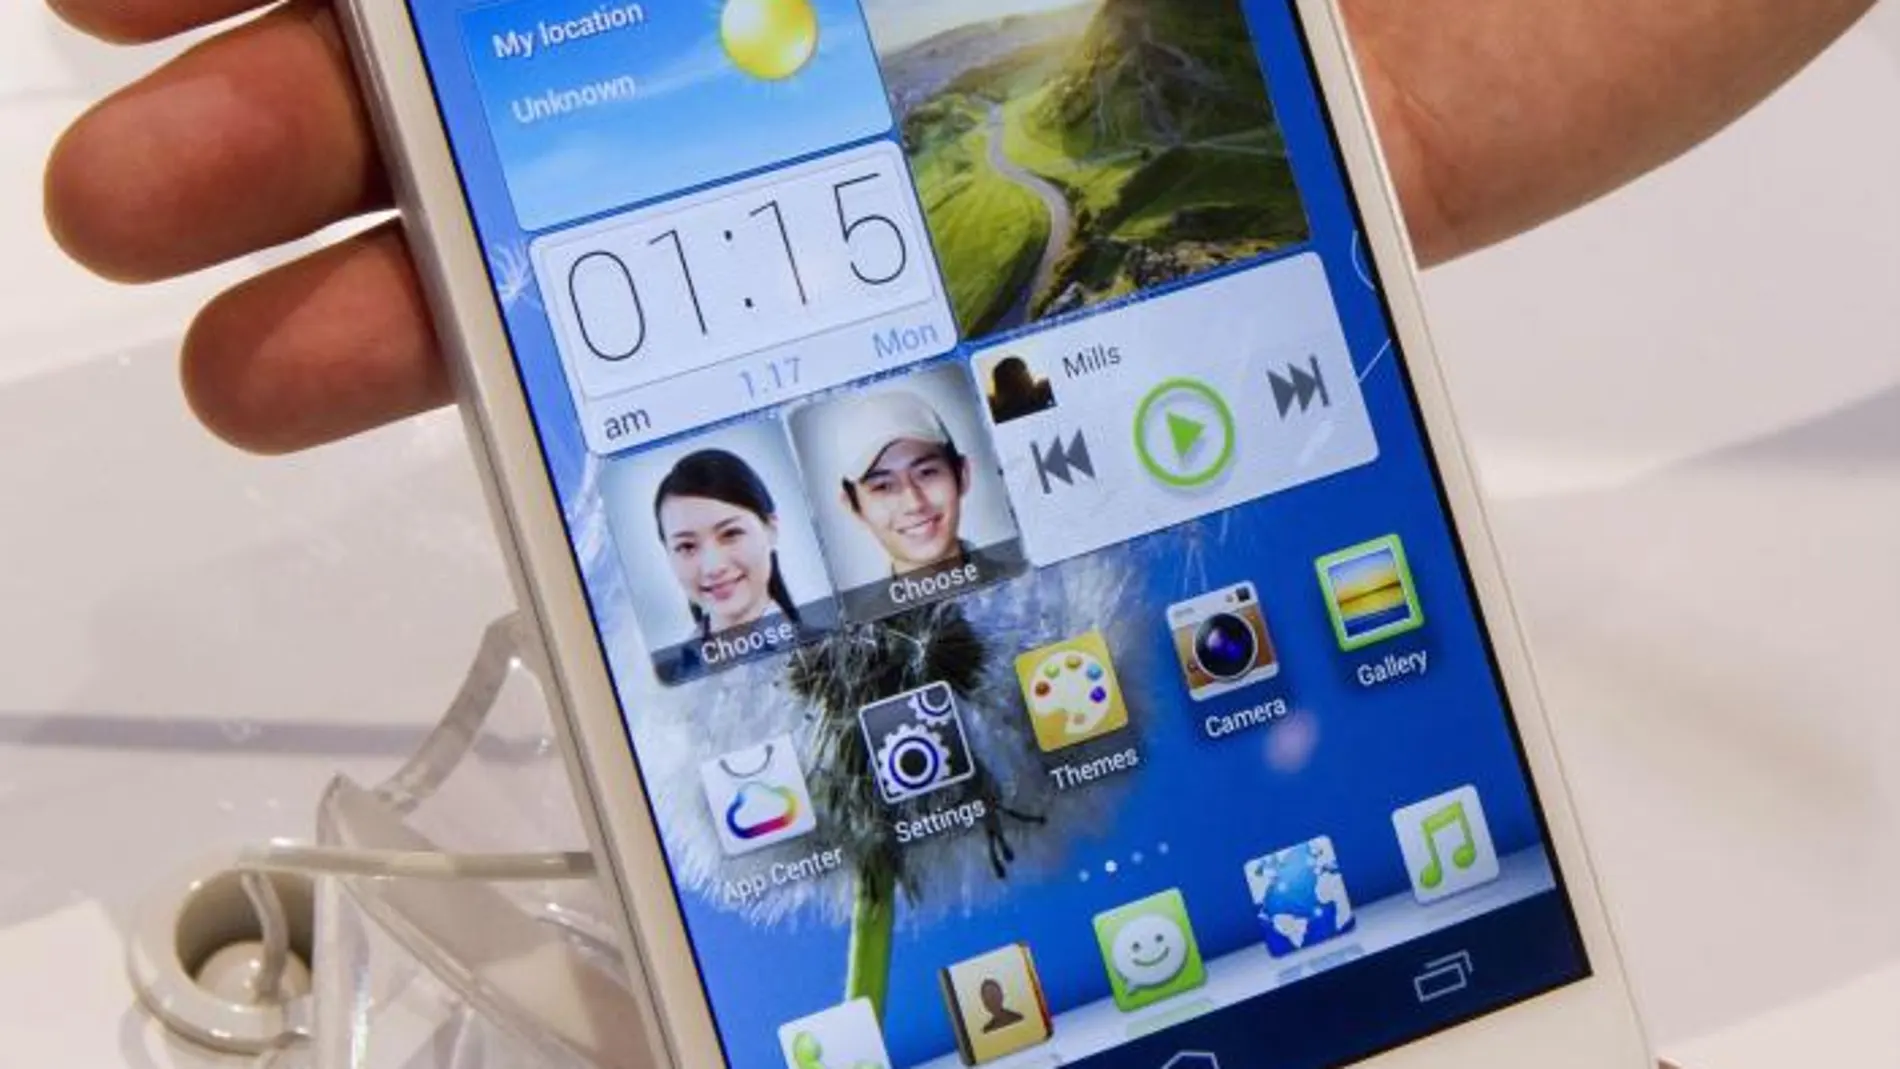 Imagen del Ascend Mate de Huawei, un smartphone de seis pulgadas presentados en el CES de Las Vegas